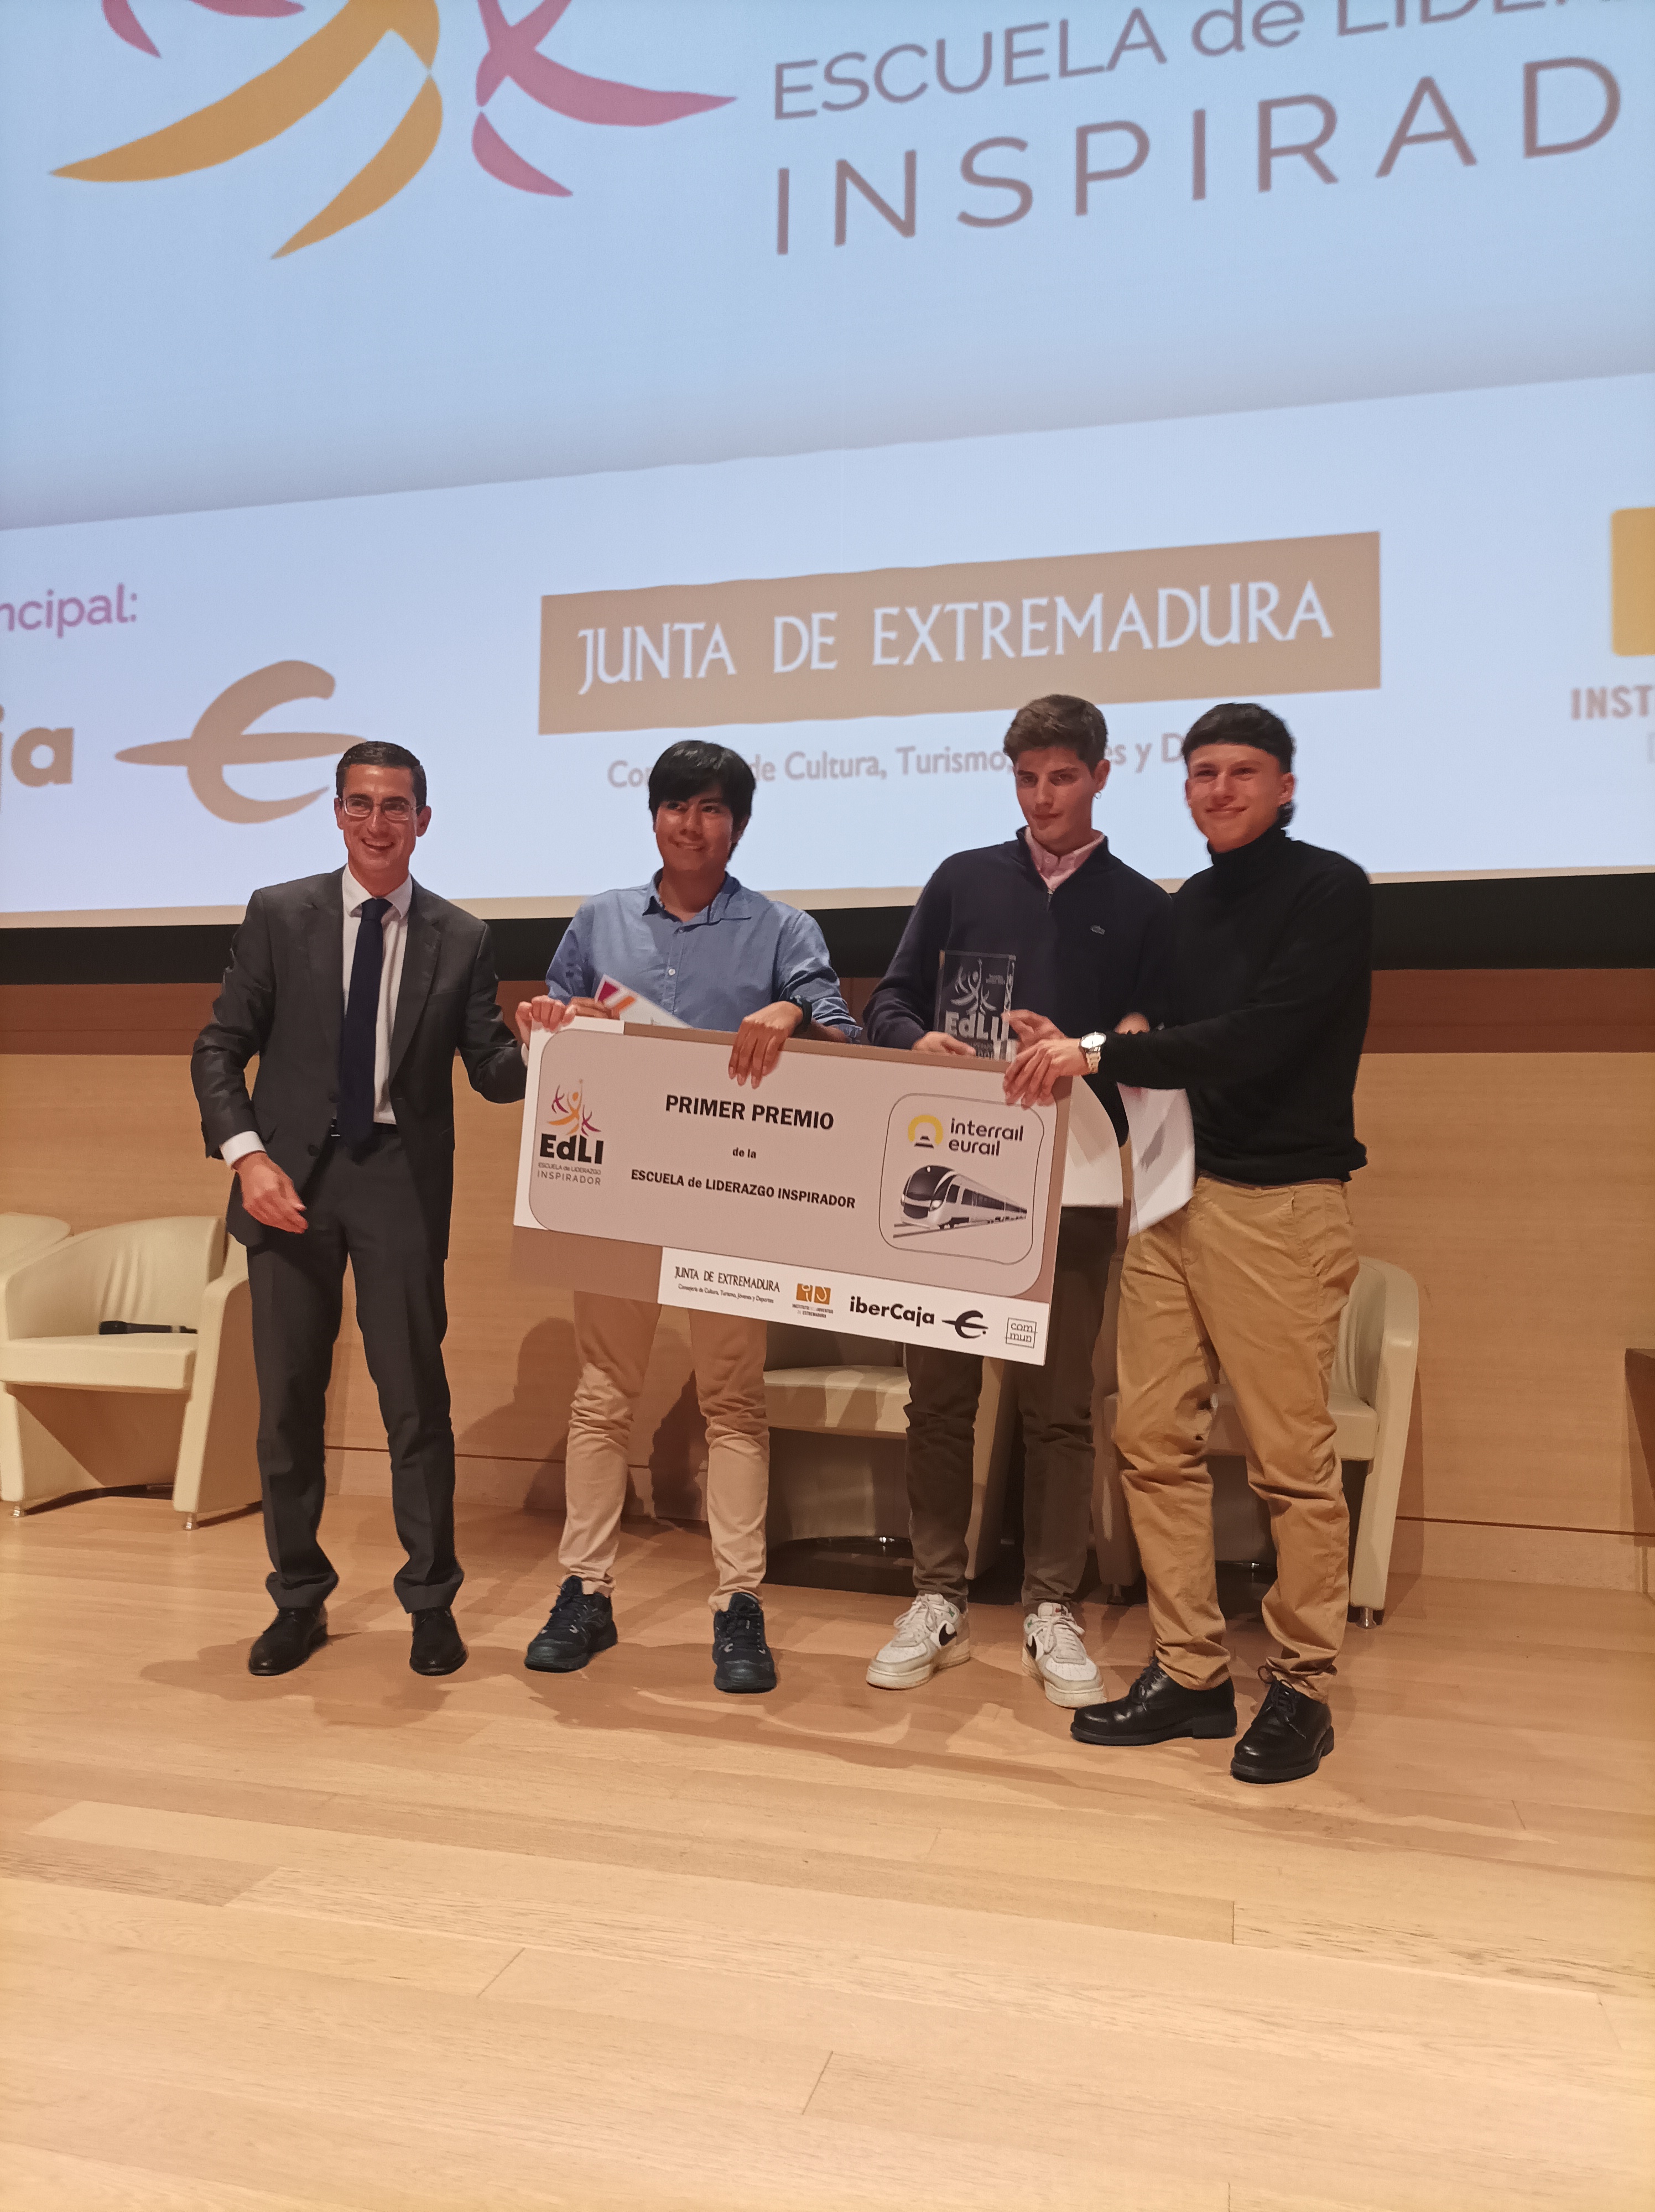 Image 4 of article La Escuela de Liderazgo Inspirador de Extremadura elige el proyecto ganador de su tercera edición